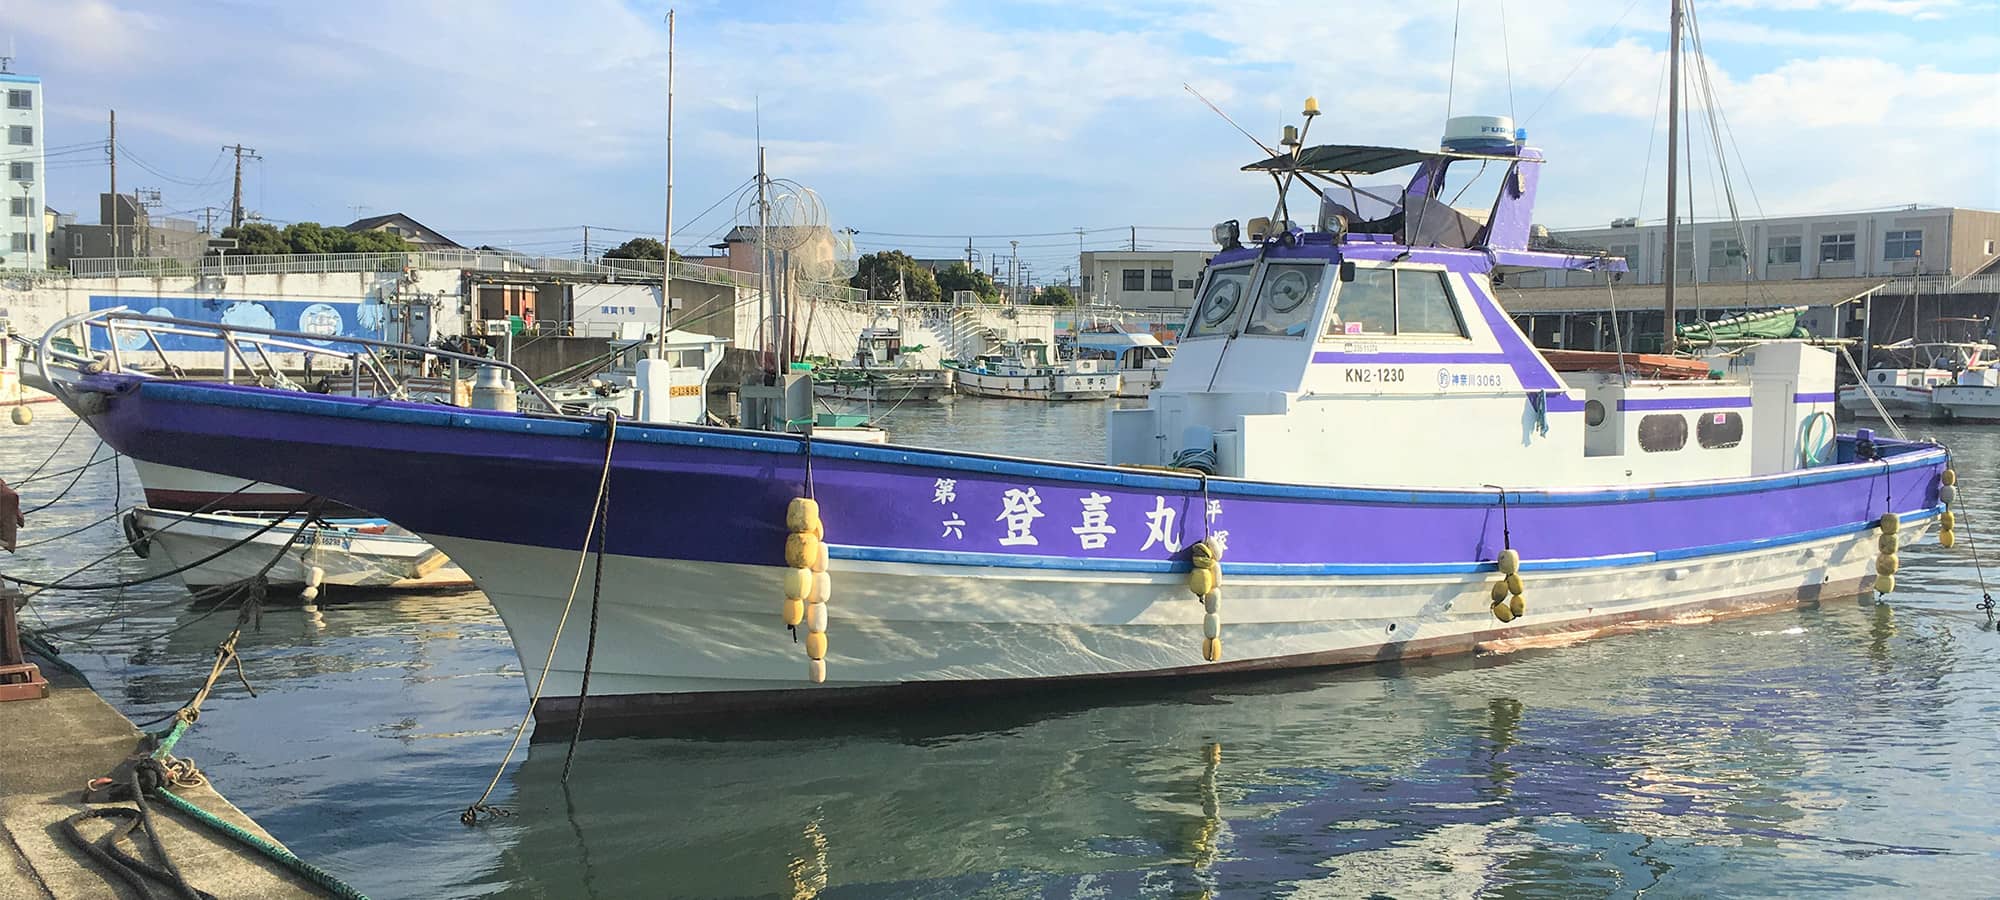 登喜丸 公式サイト 平塚市千石河岸平塚漁港の釣り船